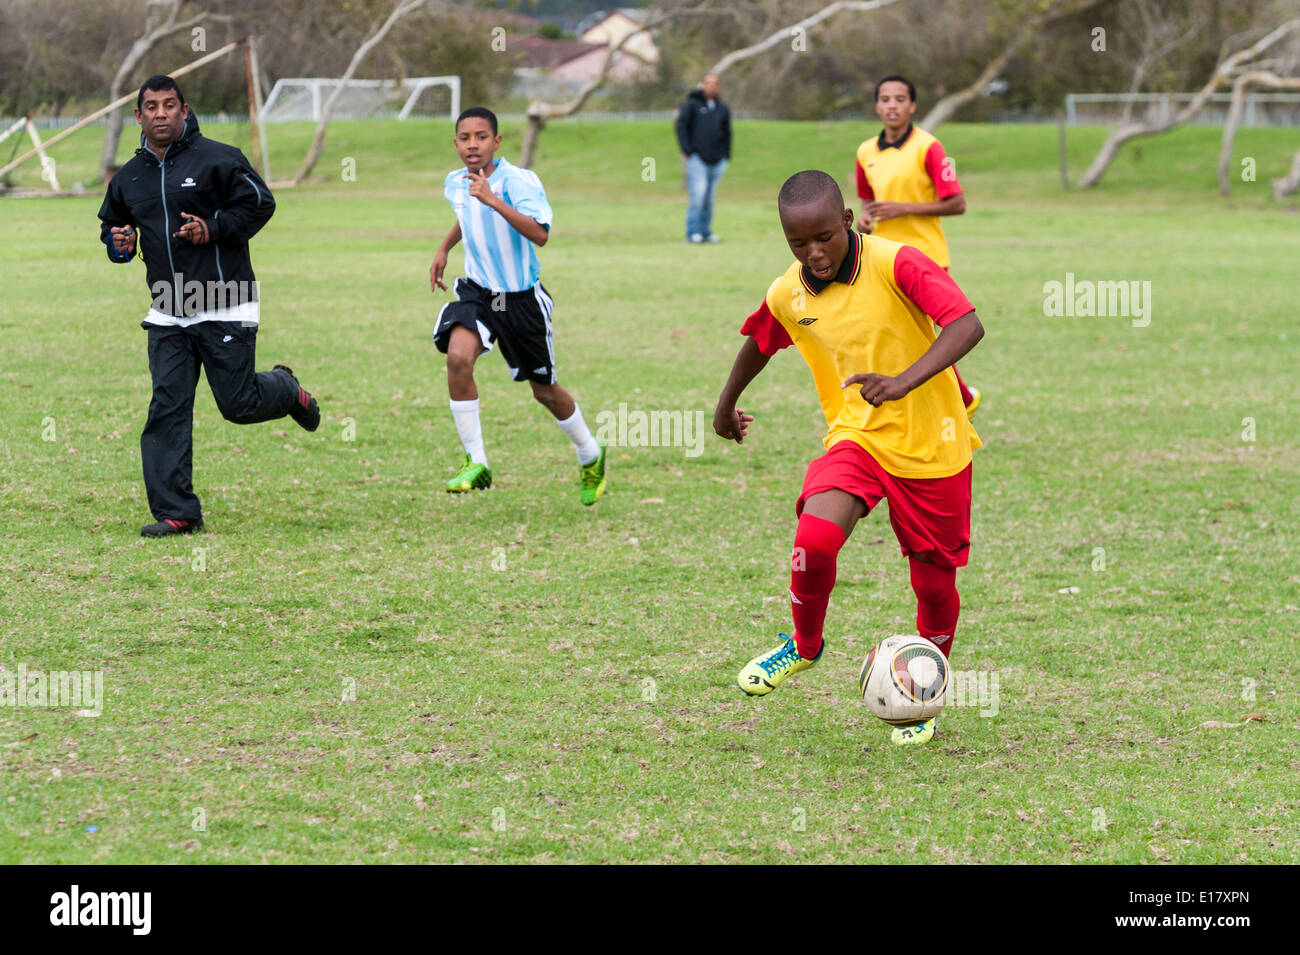 El jugador de fútbol corriendo con el balón, el árbitro, viendo, Cape Town, Sudáfrica Foto de stock